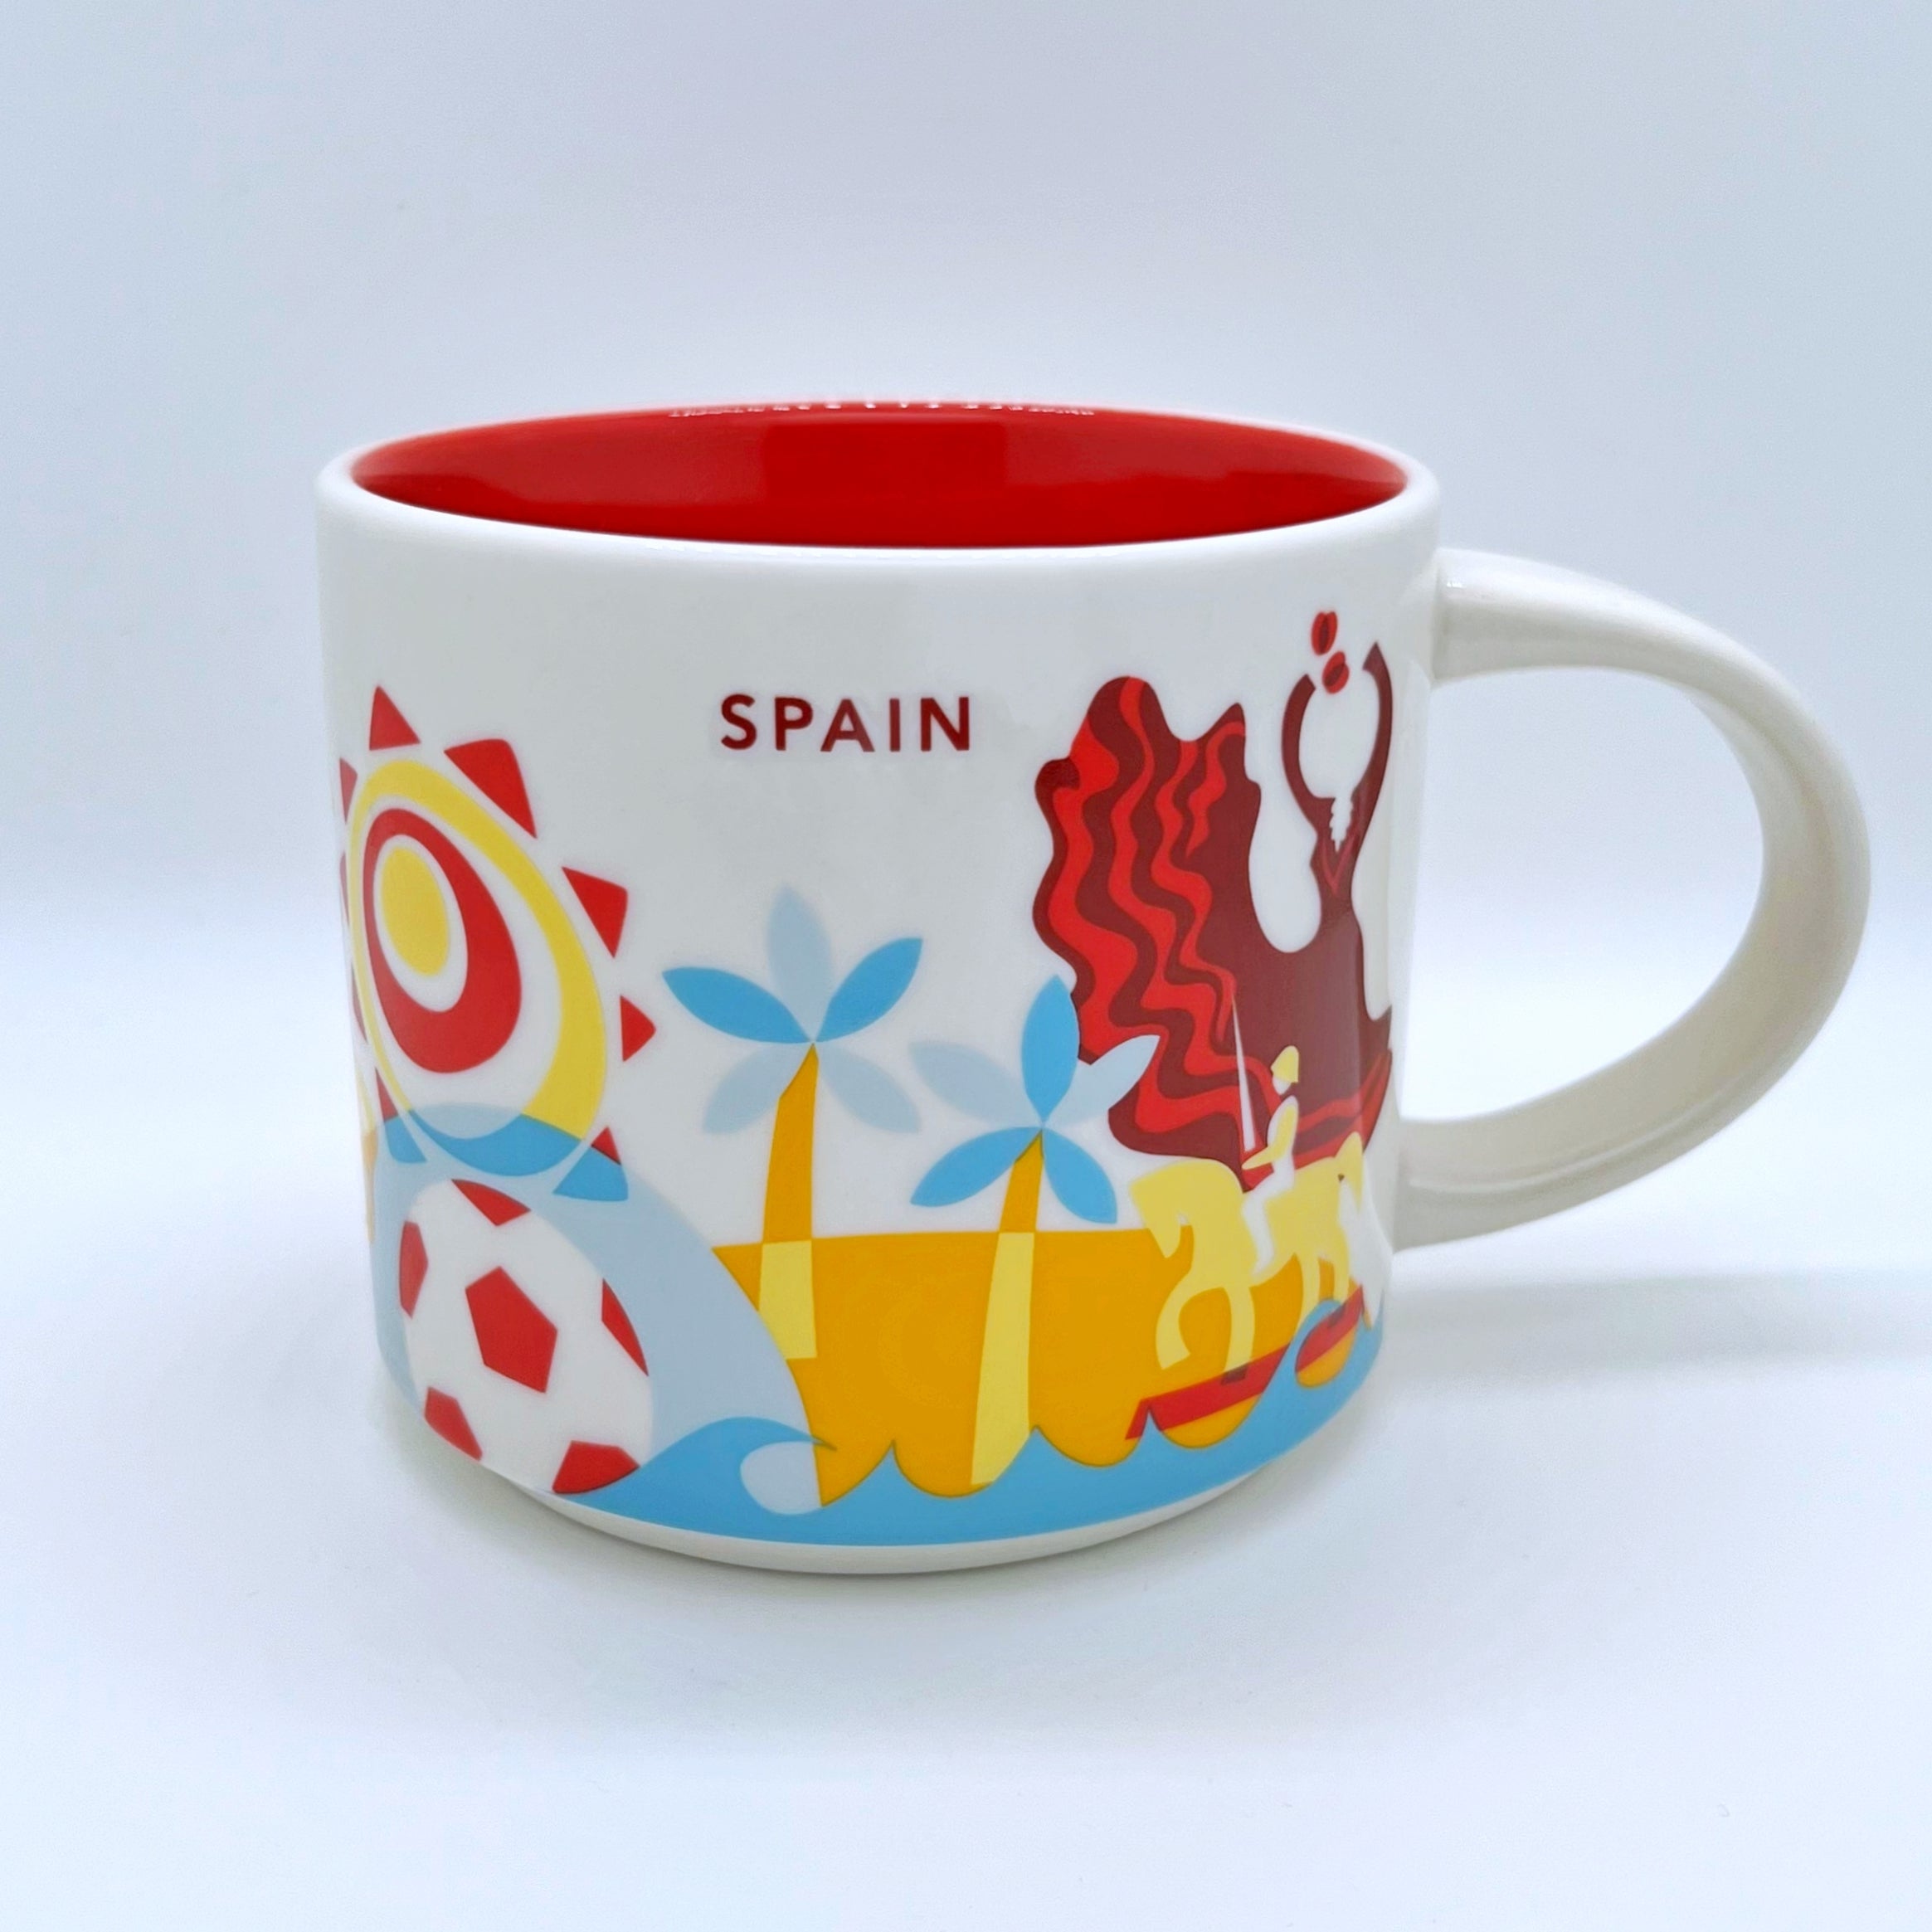 Kaffee Cappuccino oder Tee Tasse von Starbucks mit gemalten Bildern aus dem Land Spanien